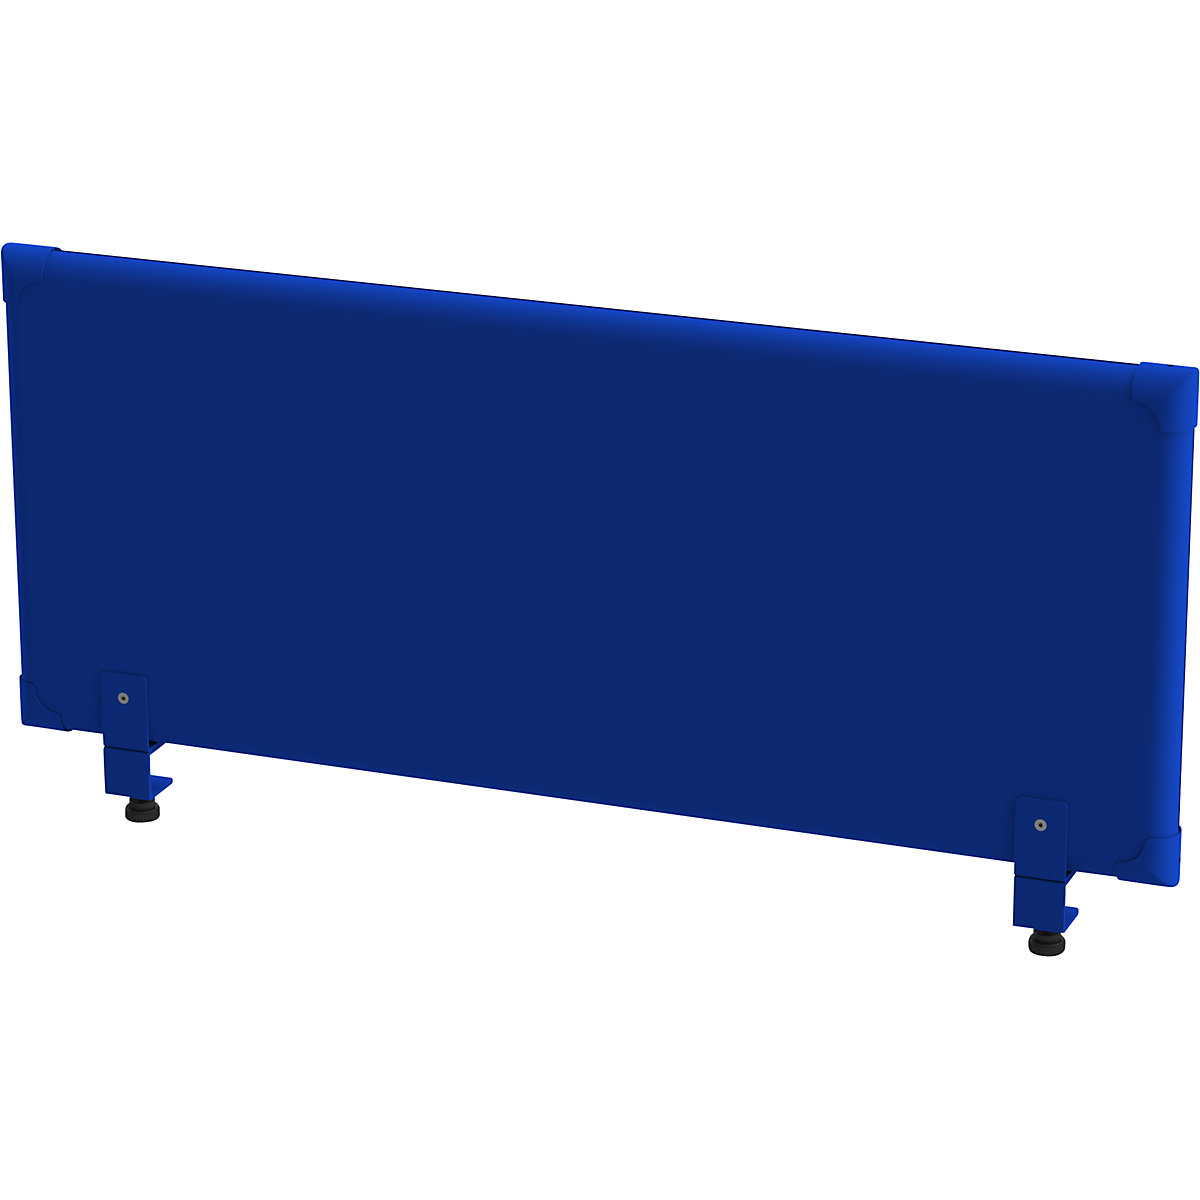 EUROKRAFTpro Akustik-Tischaufsatz-Paneel, Höhe 450 mm, Breite 1200 mm, blau